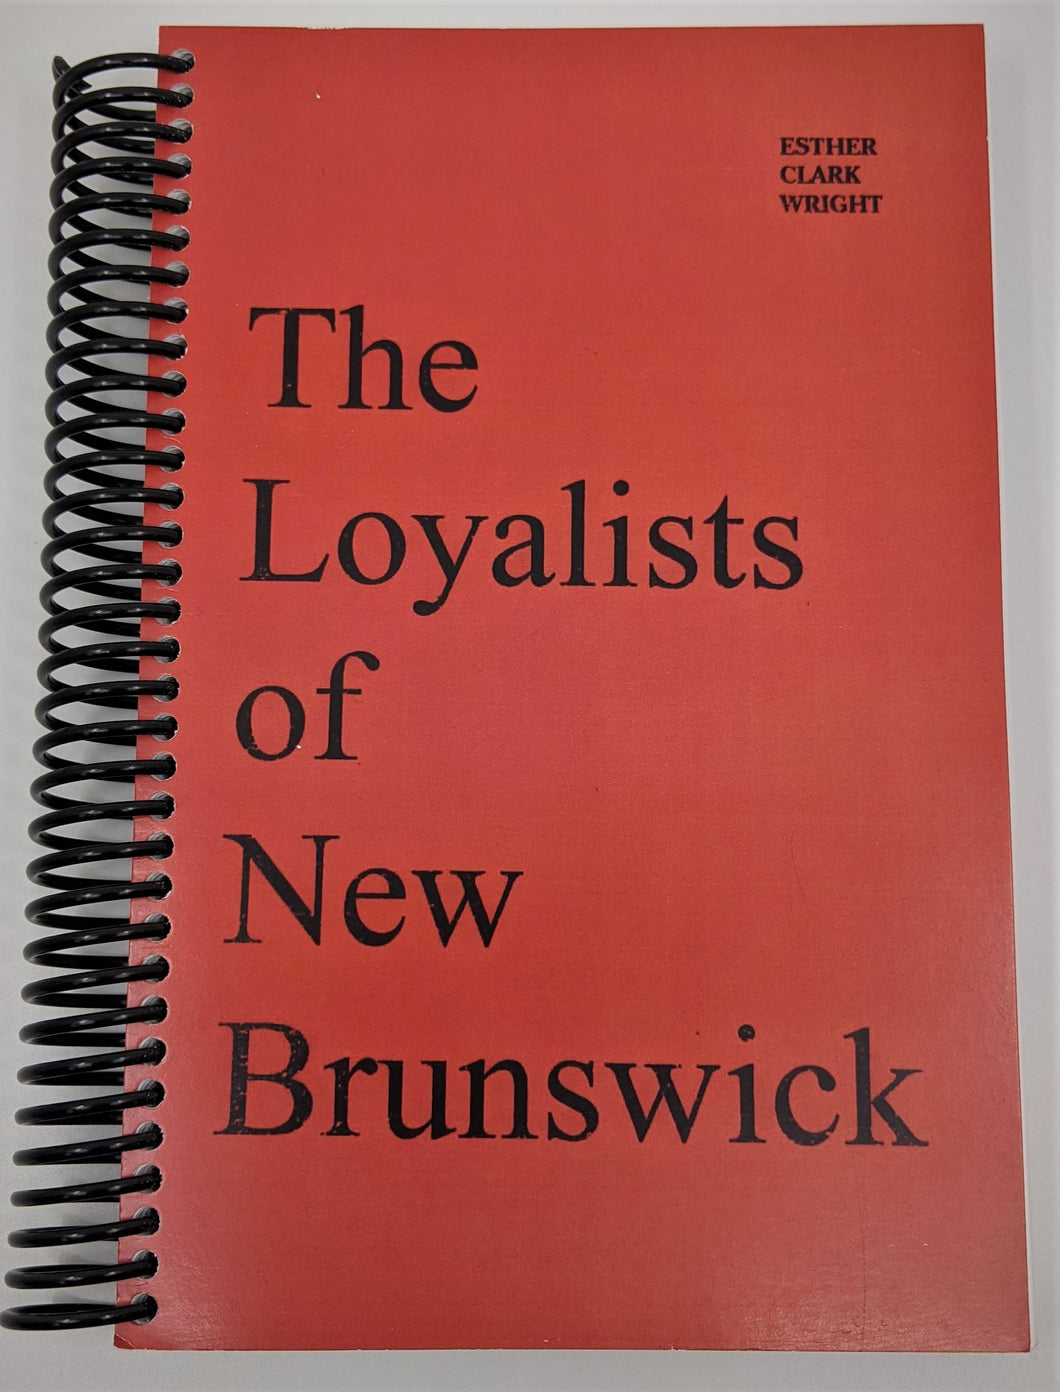 The Loyalist Of New Brunswick